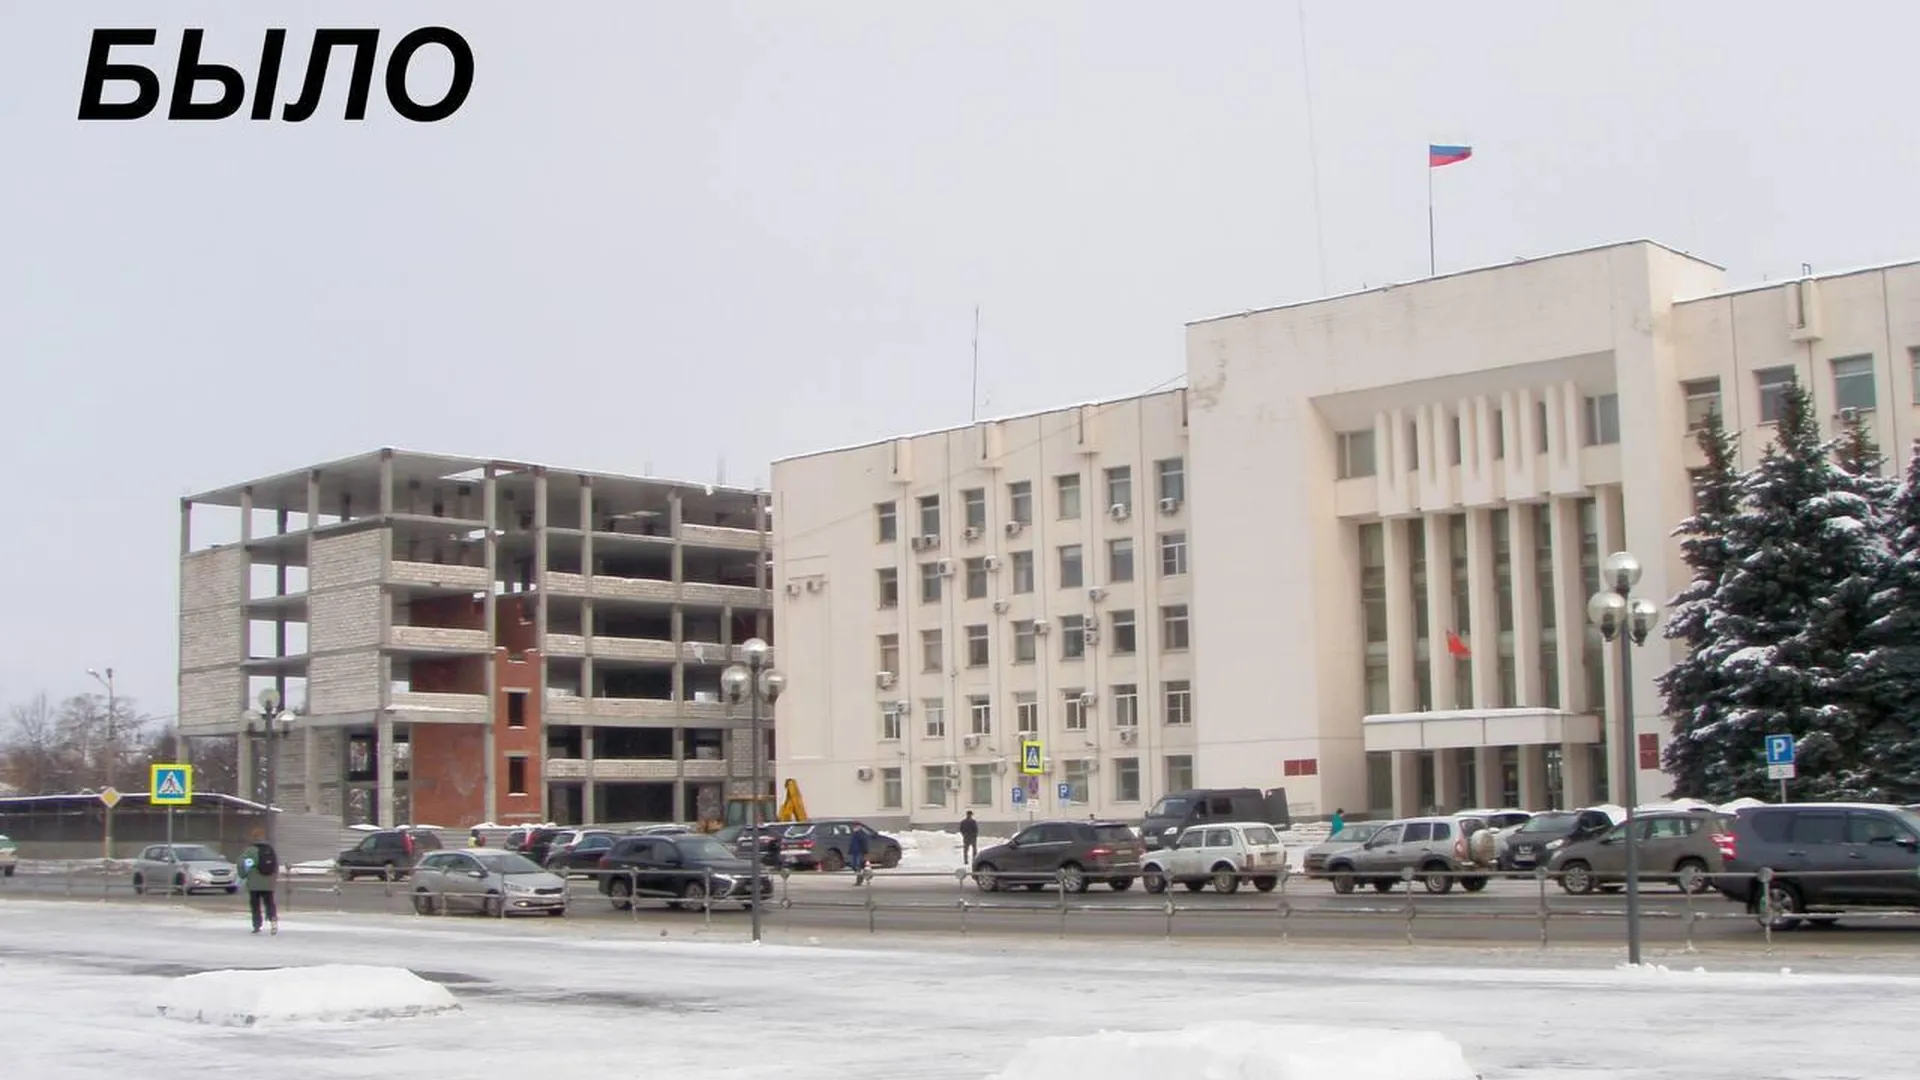 Пресс-служба Комитета по архитектуре и градостроительству Московской области